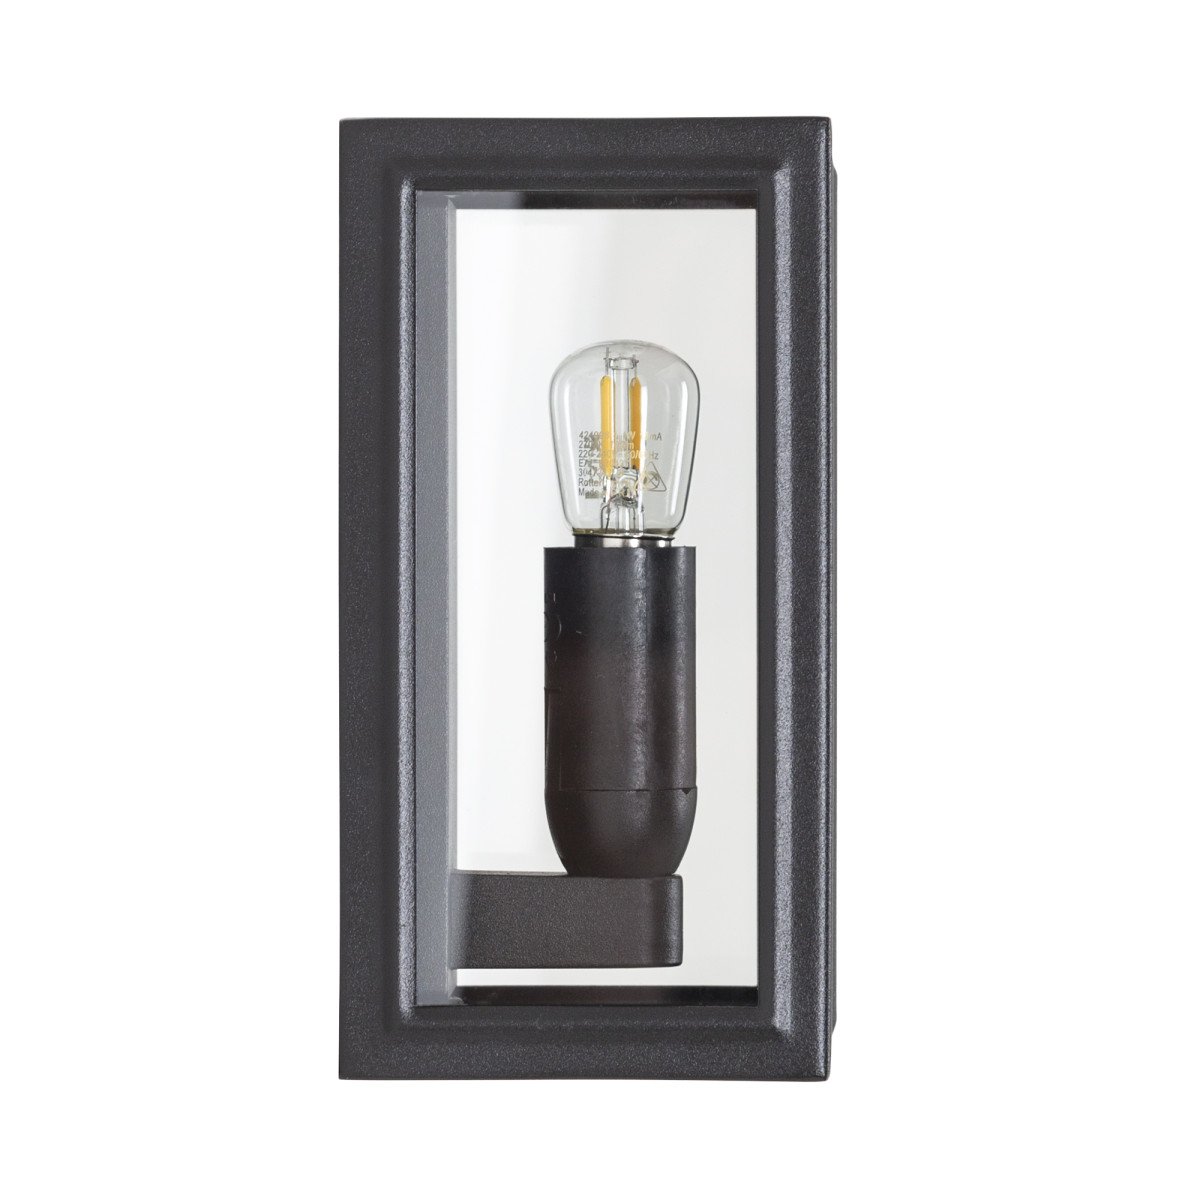 verandalamp, buitenlamp Buitenlamp Spark zwart, strak vormgegeven trendy buitenverlichting voor aan de muur van KS Verlichting